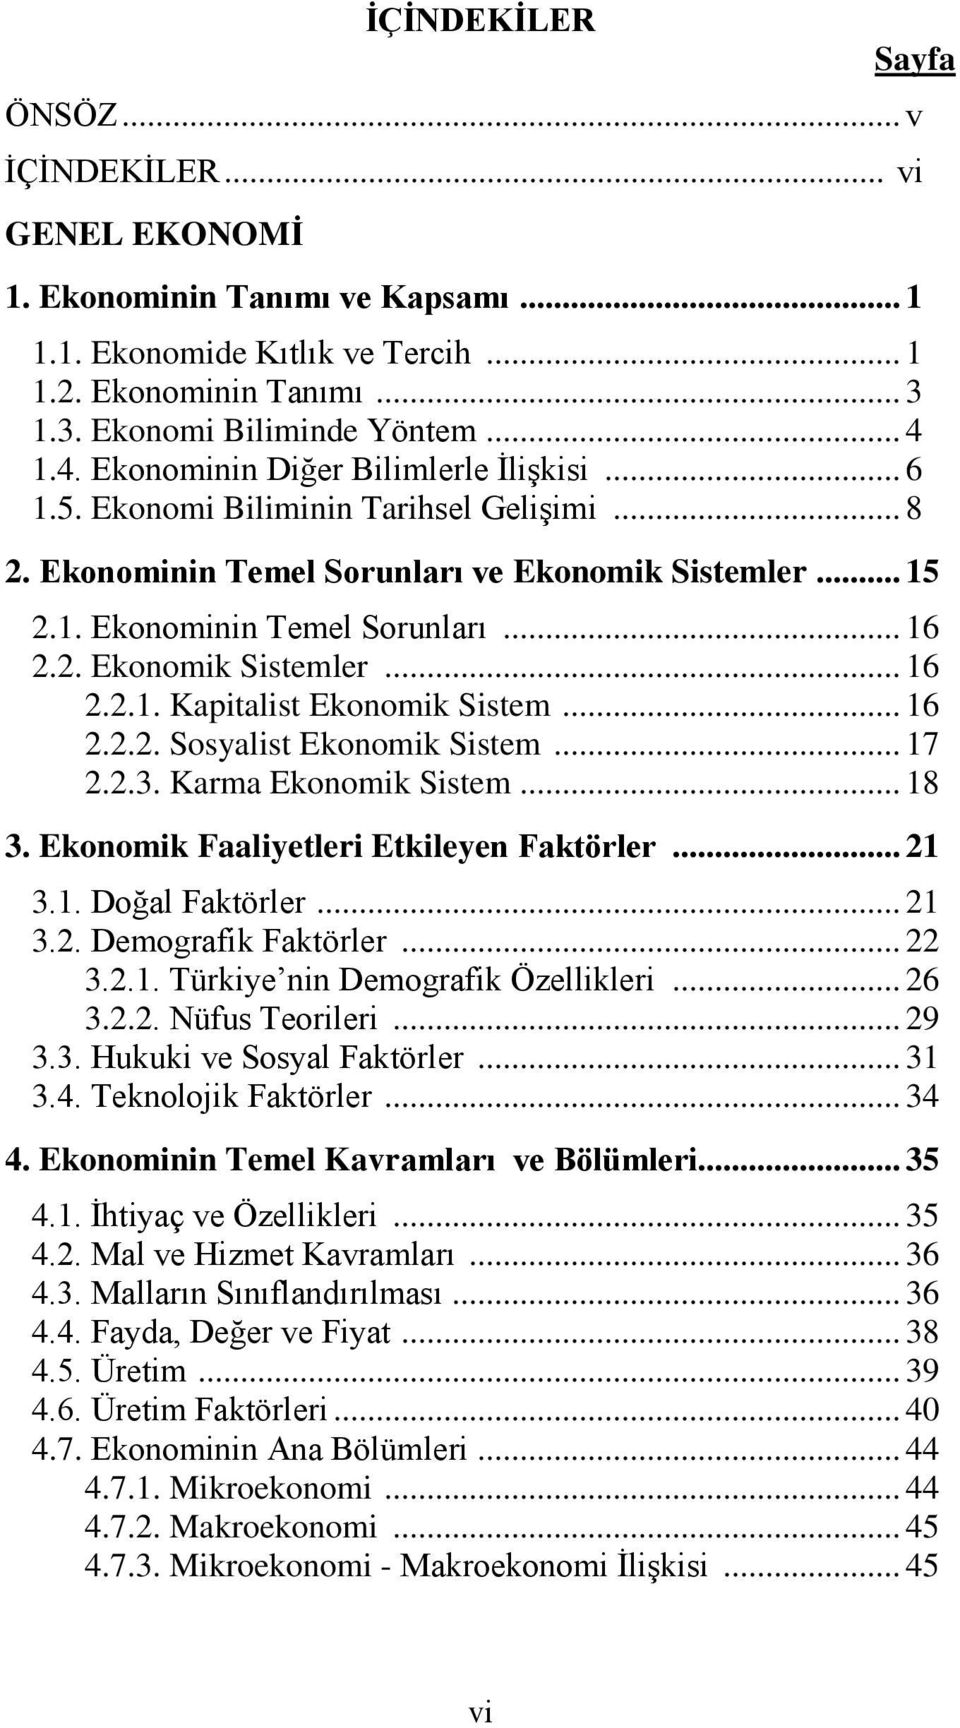 .. 16 2.2.2. Sosyalist Ekonomik Sistem... 17 2.2.3. Karma Ekonomik Sistem... 18 3. Ekonomik Faaliyetleri Etkileyen Faktörler... 21 3.1. Doğal Faktörler... 21 3.2. Demografik Faktörler... 22 3.2.1. Türkiye nin Demografik Özellikleri.